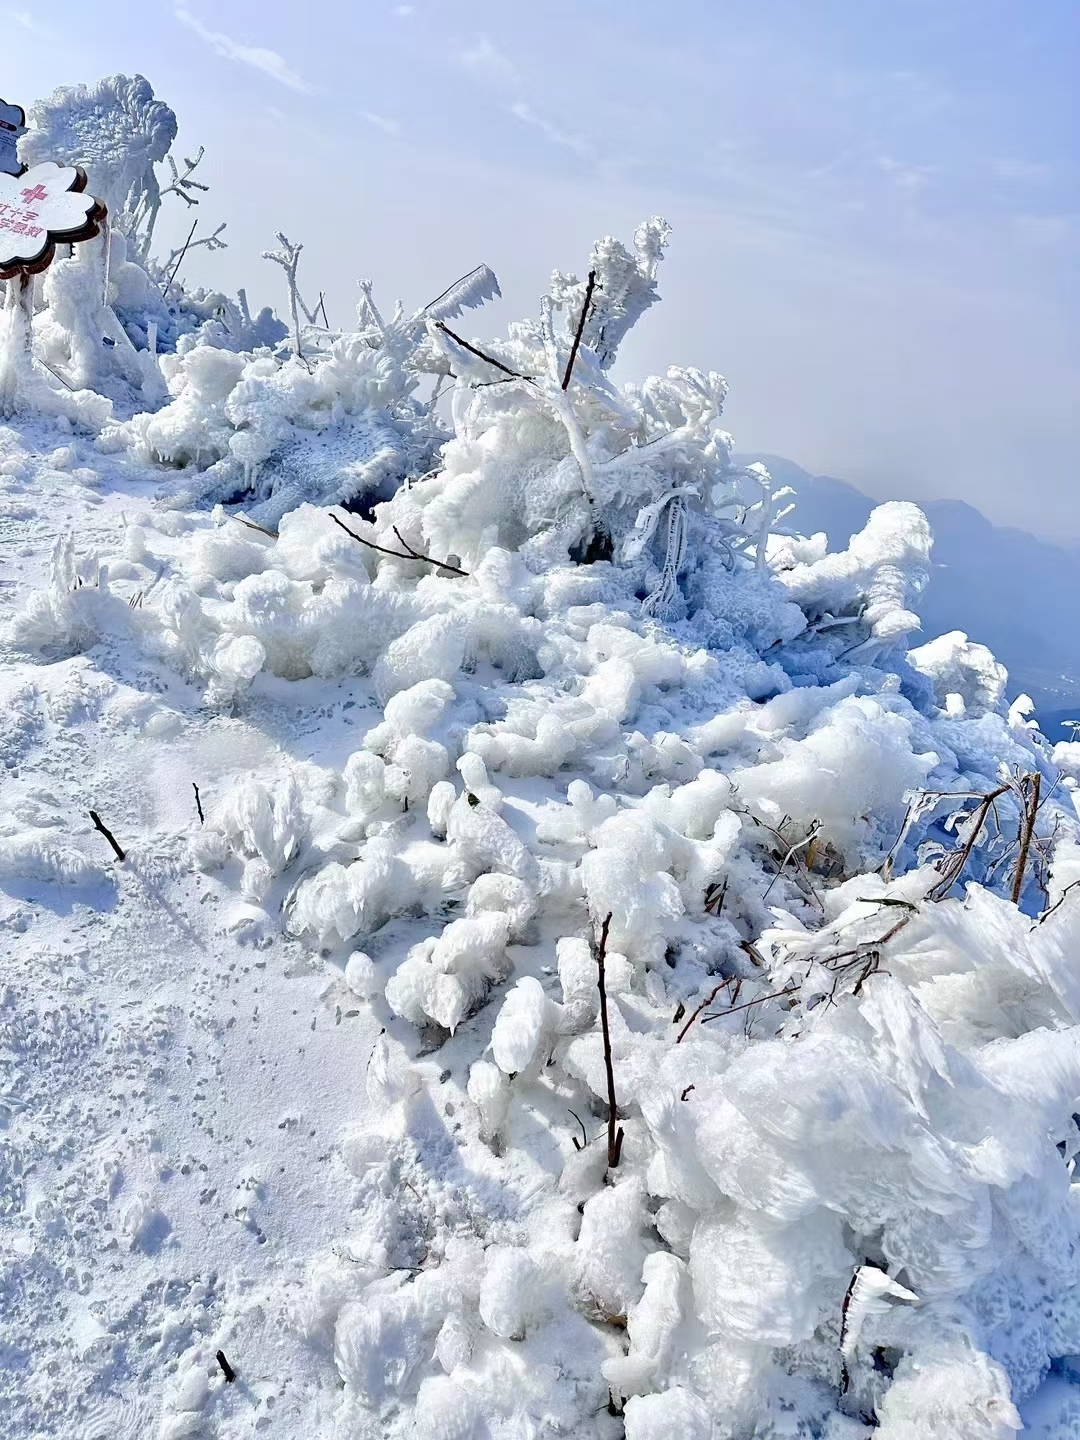 #打卡最美雪景 生活融入自然 感谢大自然的馈赠